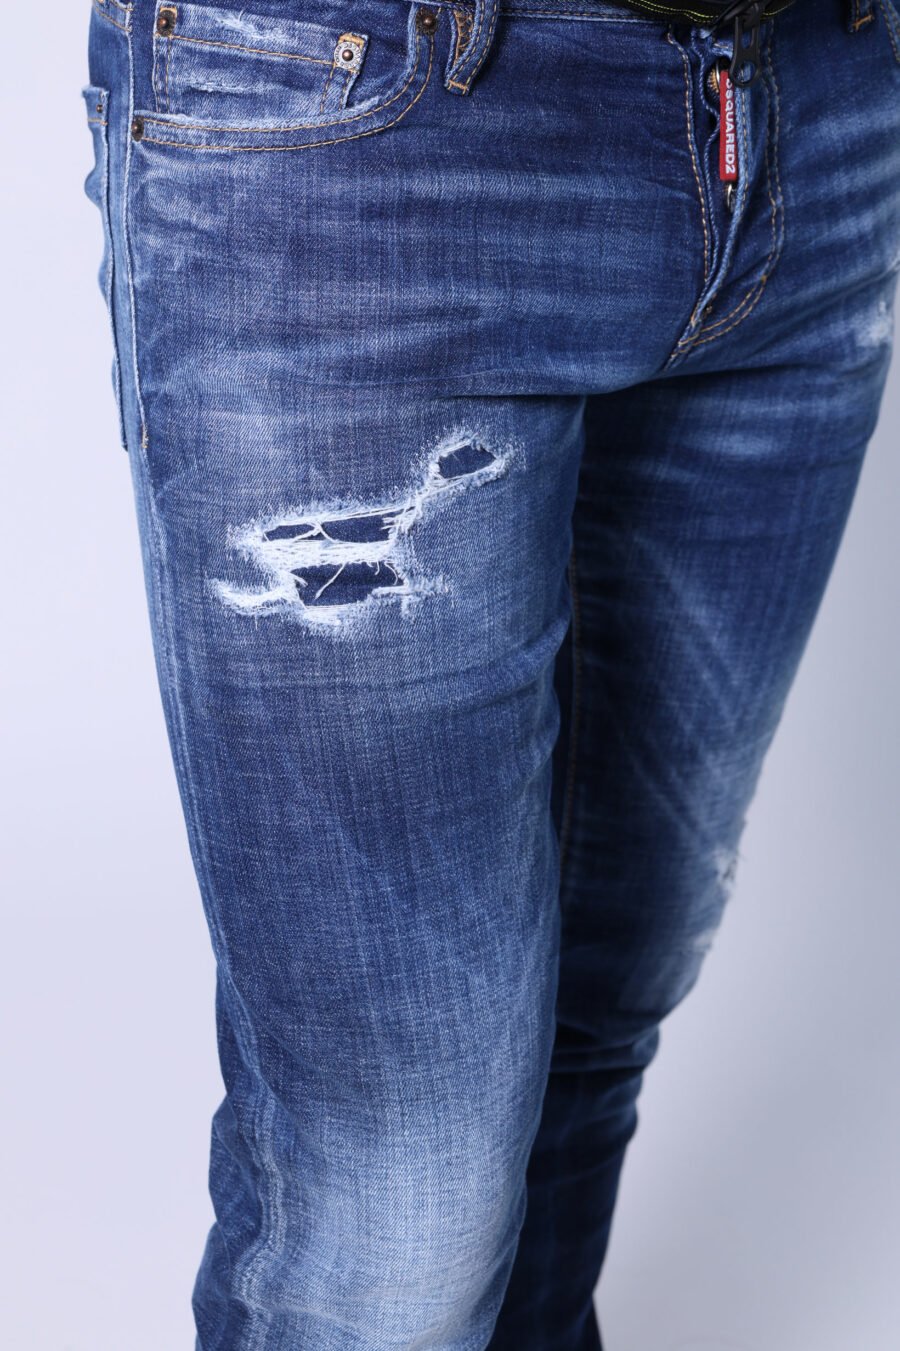 Pantalón vaquero "Slim jean" azul semi desgastado con rotos - Untitled Catalog 05531